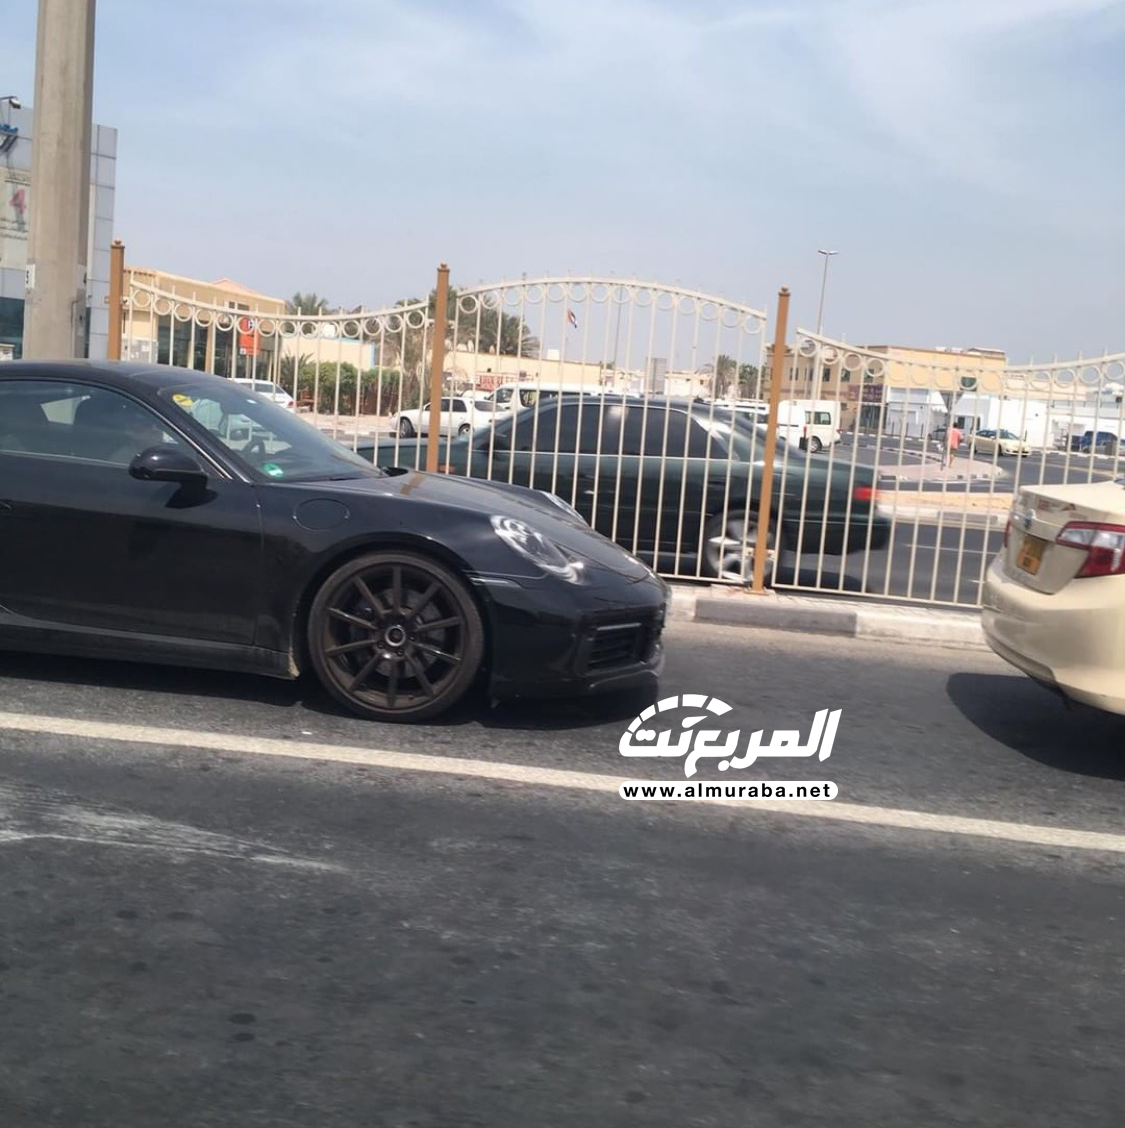 "بالصور" بورش 911 الجديدة كلياً تختبر نفسها في شوارع مدينة دبي 13